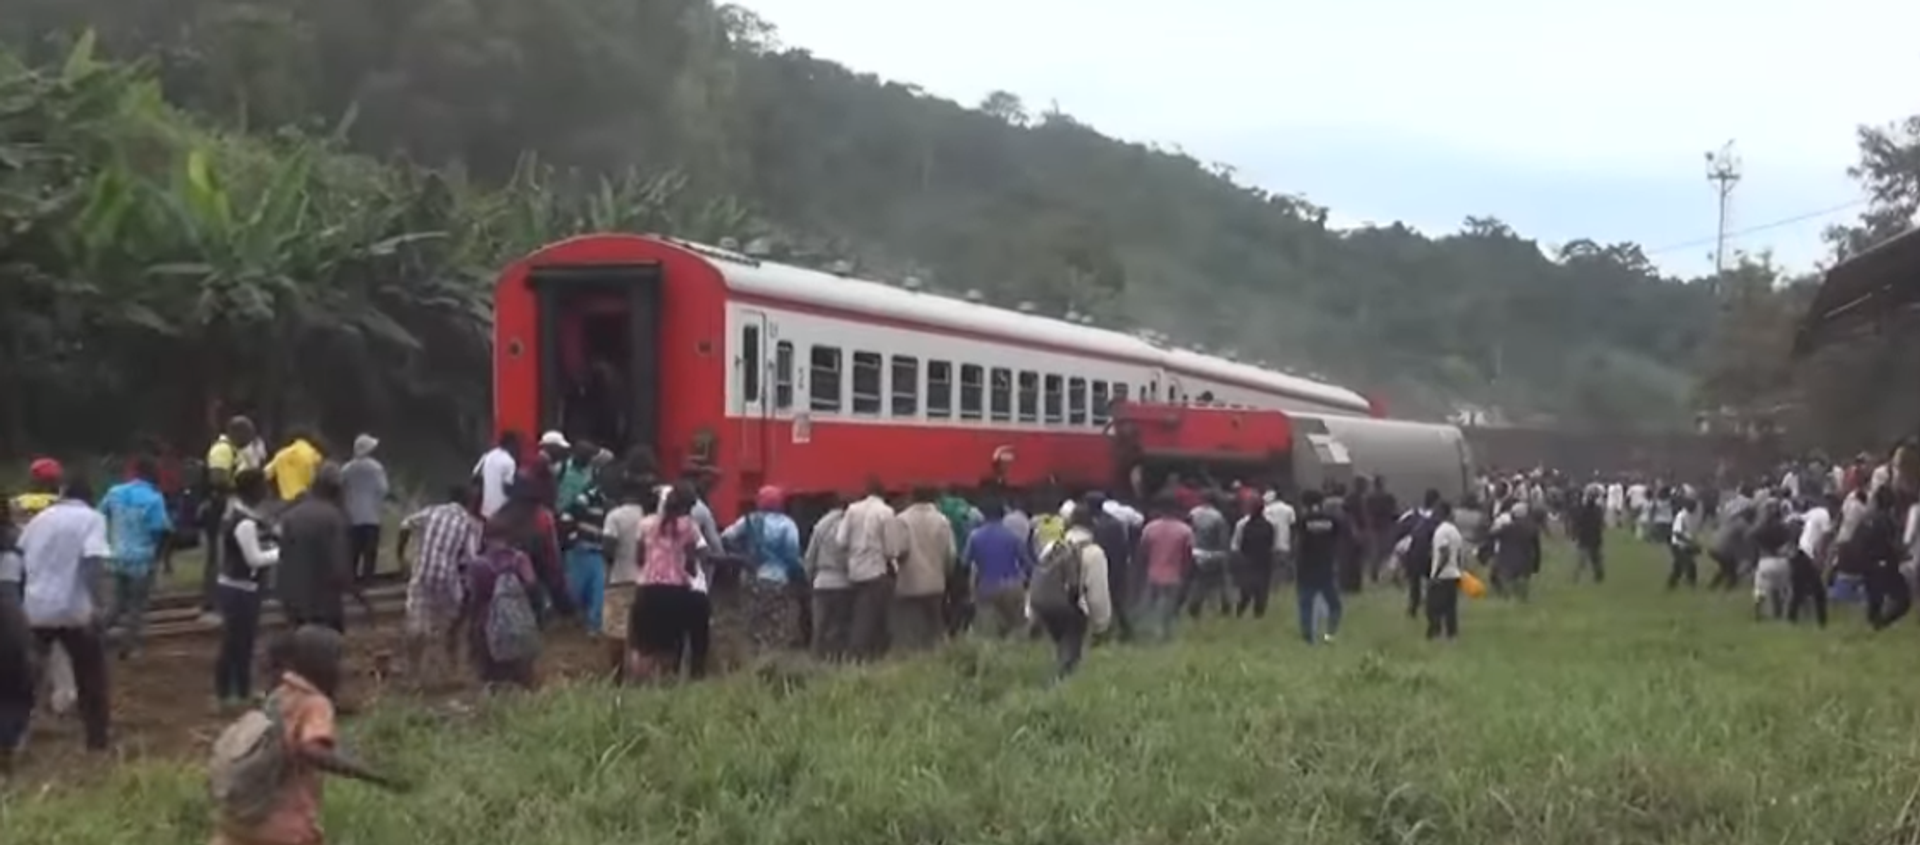 Cameroun: 53 morts dans le déraillement d'un train - Sputnik Afrique, 1920, 21.10.2016